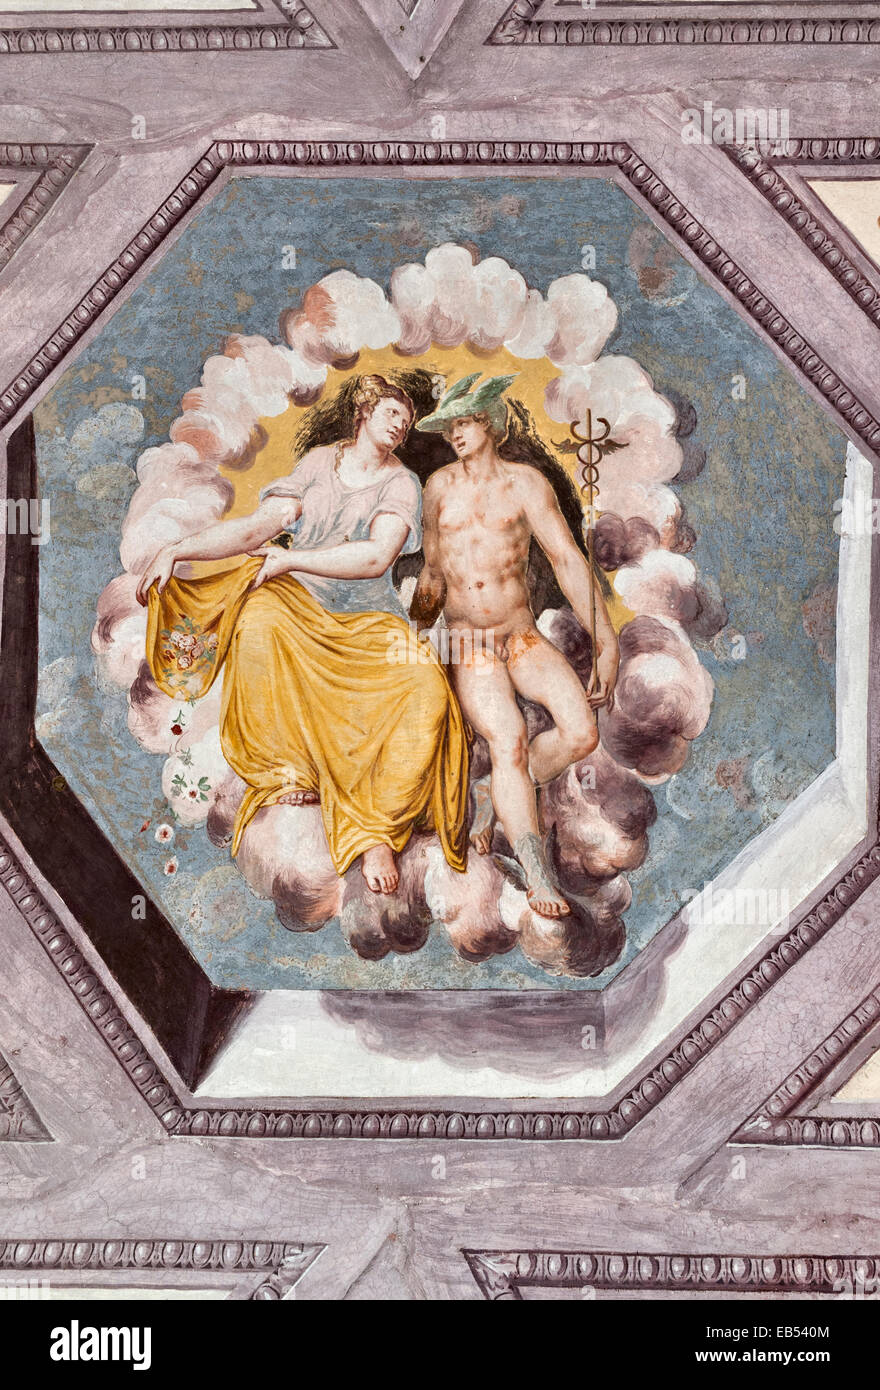 Plafond décoré de fresques représentant la divinité romaine Mercure (Hermès), dieu de la chance et du commerce, ainsi que le messager, à Villa Godi Malinverni, Vicence, Italie Banque D'Images